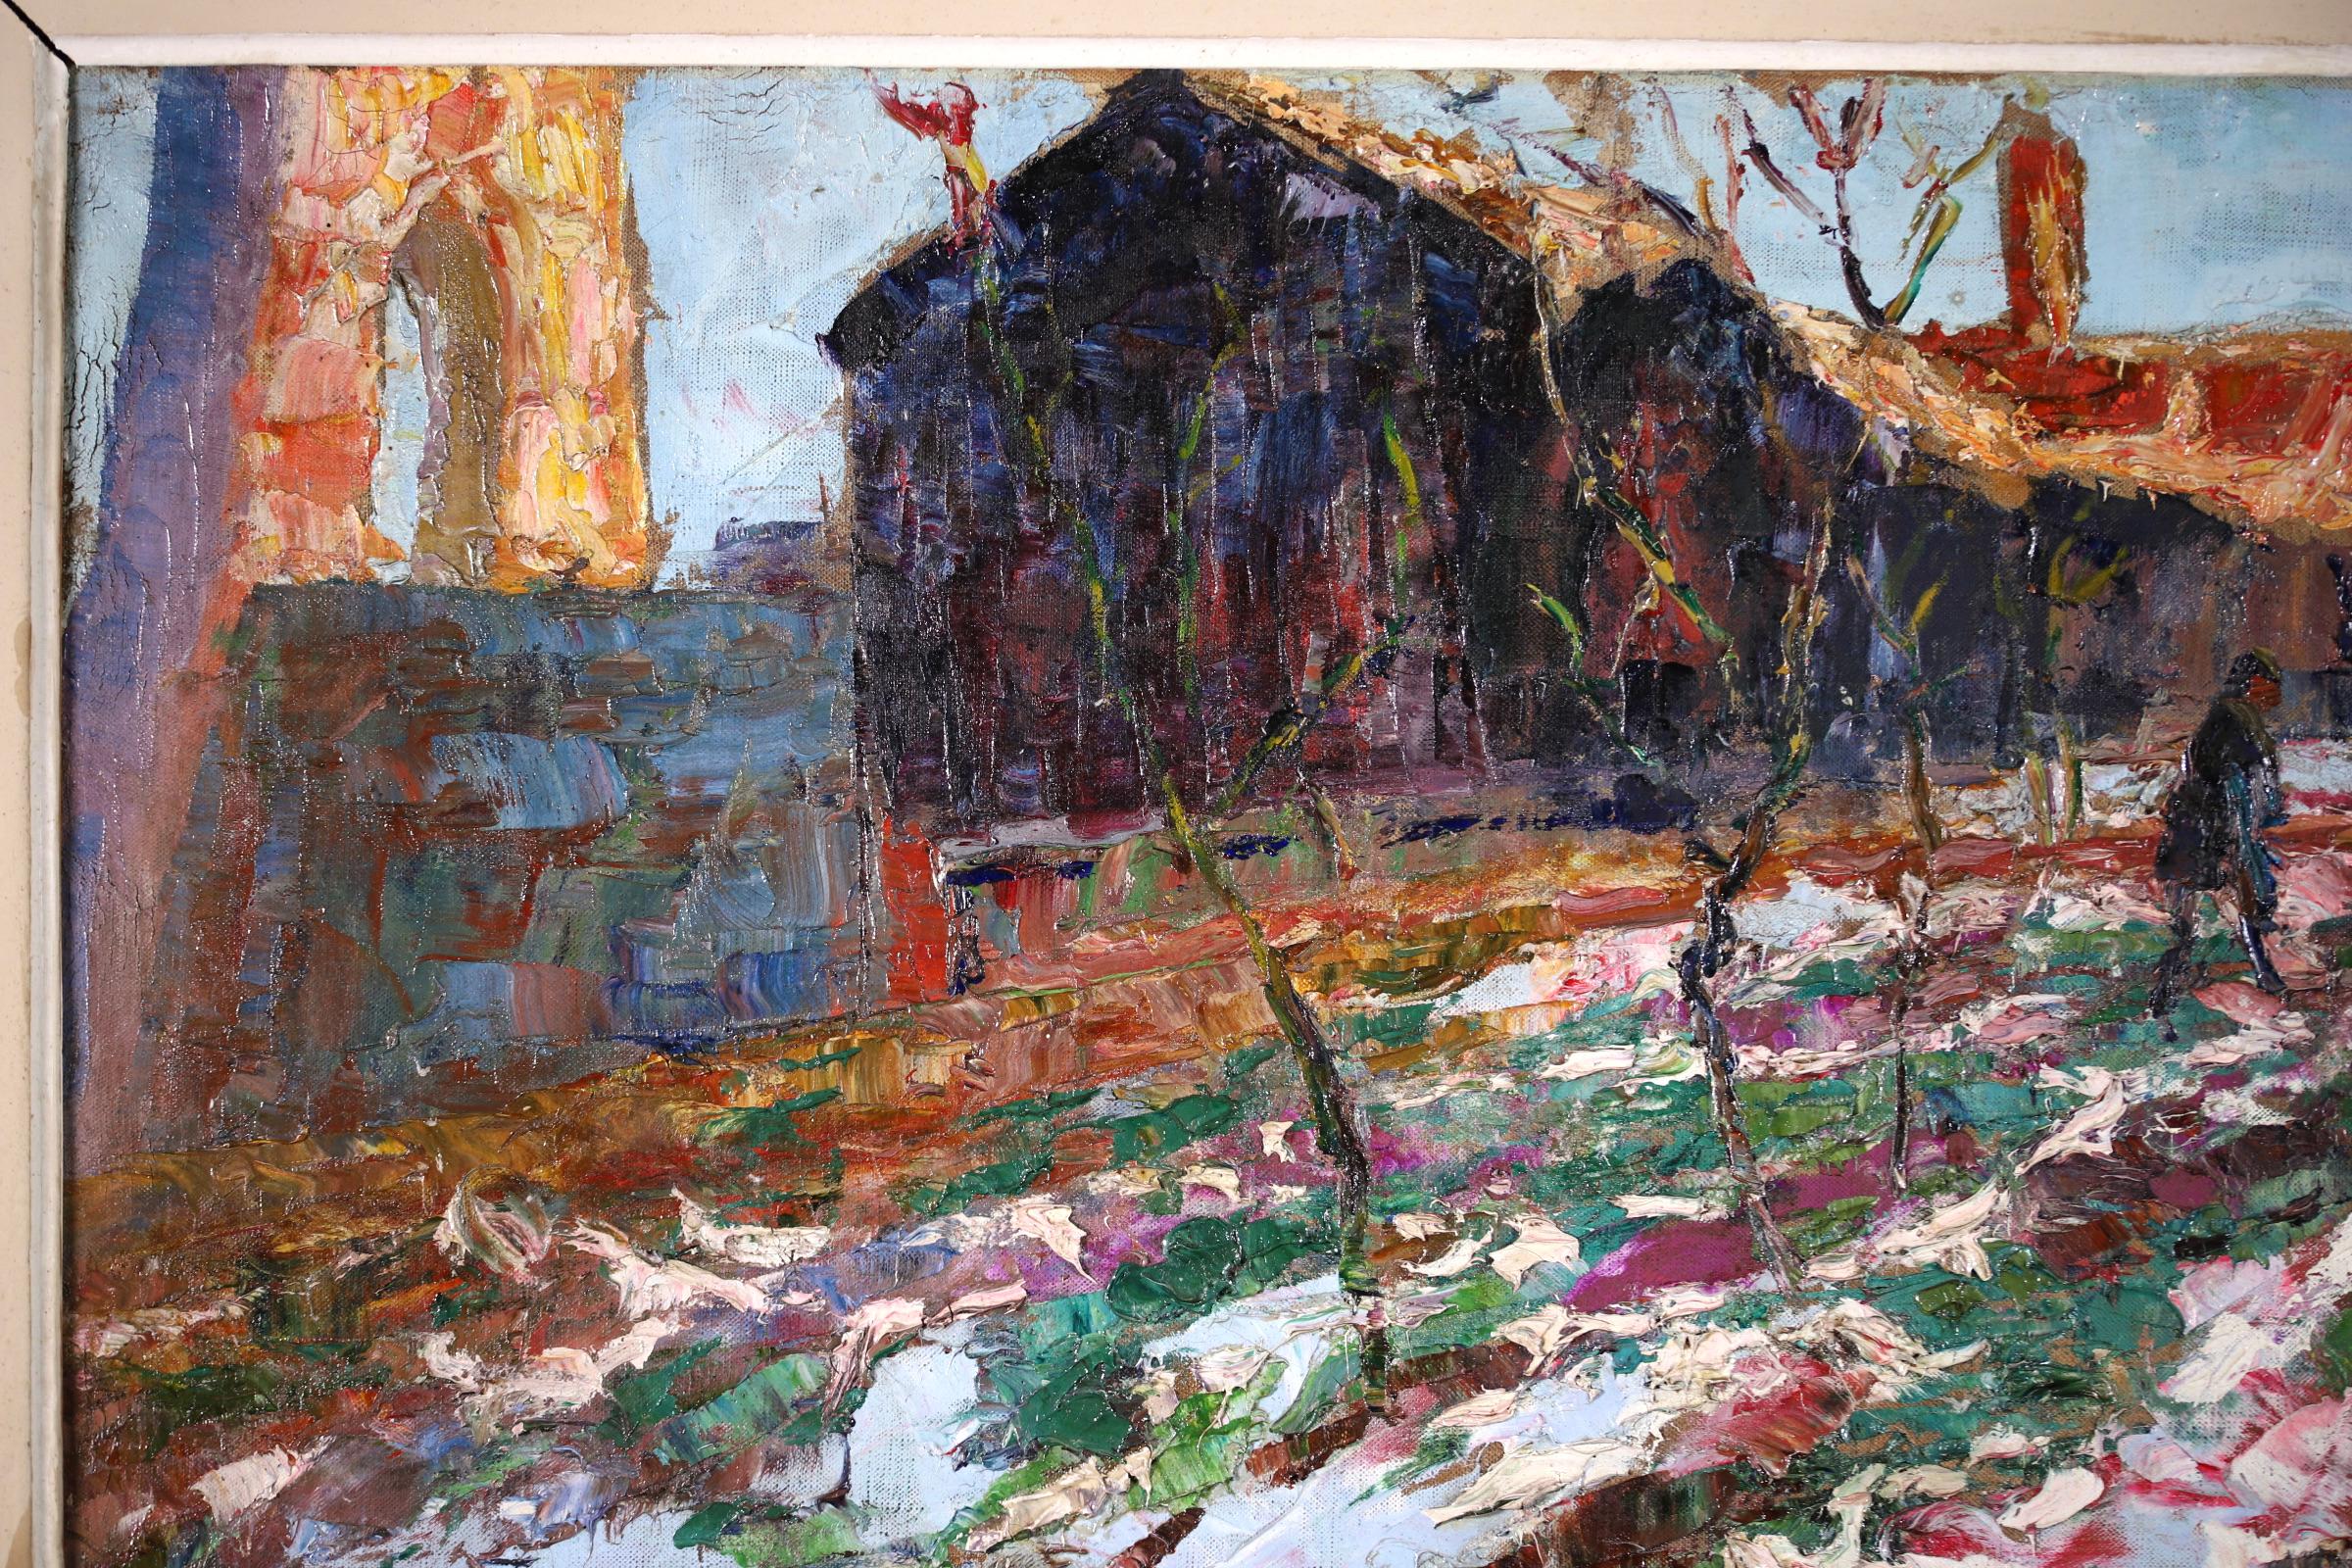 Grand paysage signé, huile sur toile vers 1920 par le très recherché peintre post-impressionniste français Victor Charreton, qui était connu comme le peintre des couleurs. L'œuvre représente une femme traversant un village enneigé en hiver. La pièce